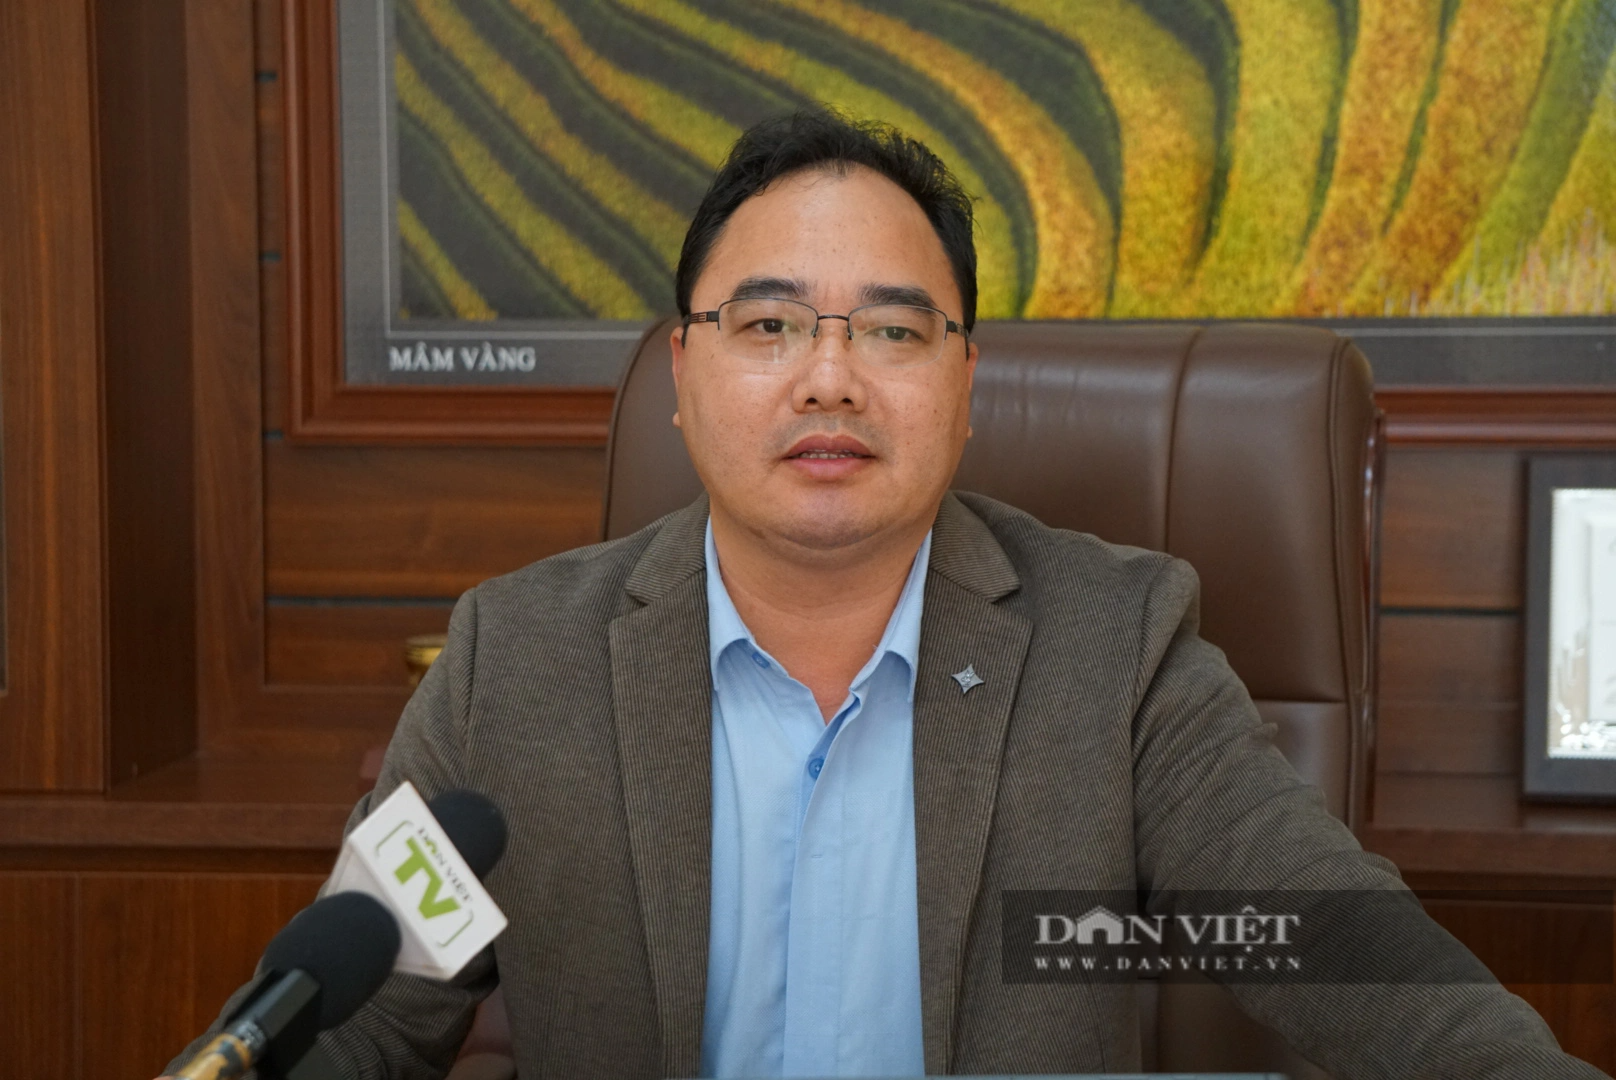 Chủ tịch Hội Nông đân tỉnh Yên Bái: Sẽ nhân rộng mô hình gia đình nông dân hạnh phúc - Ảnh 1.